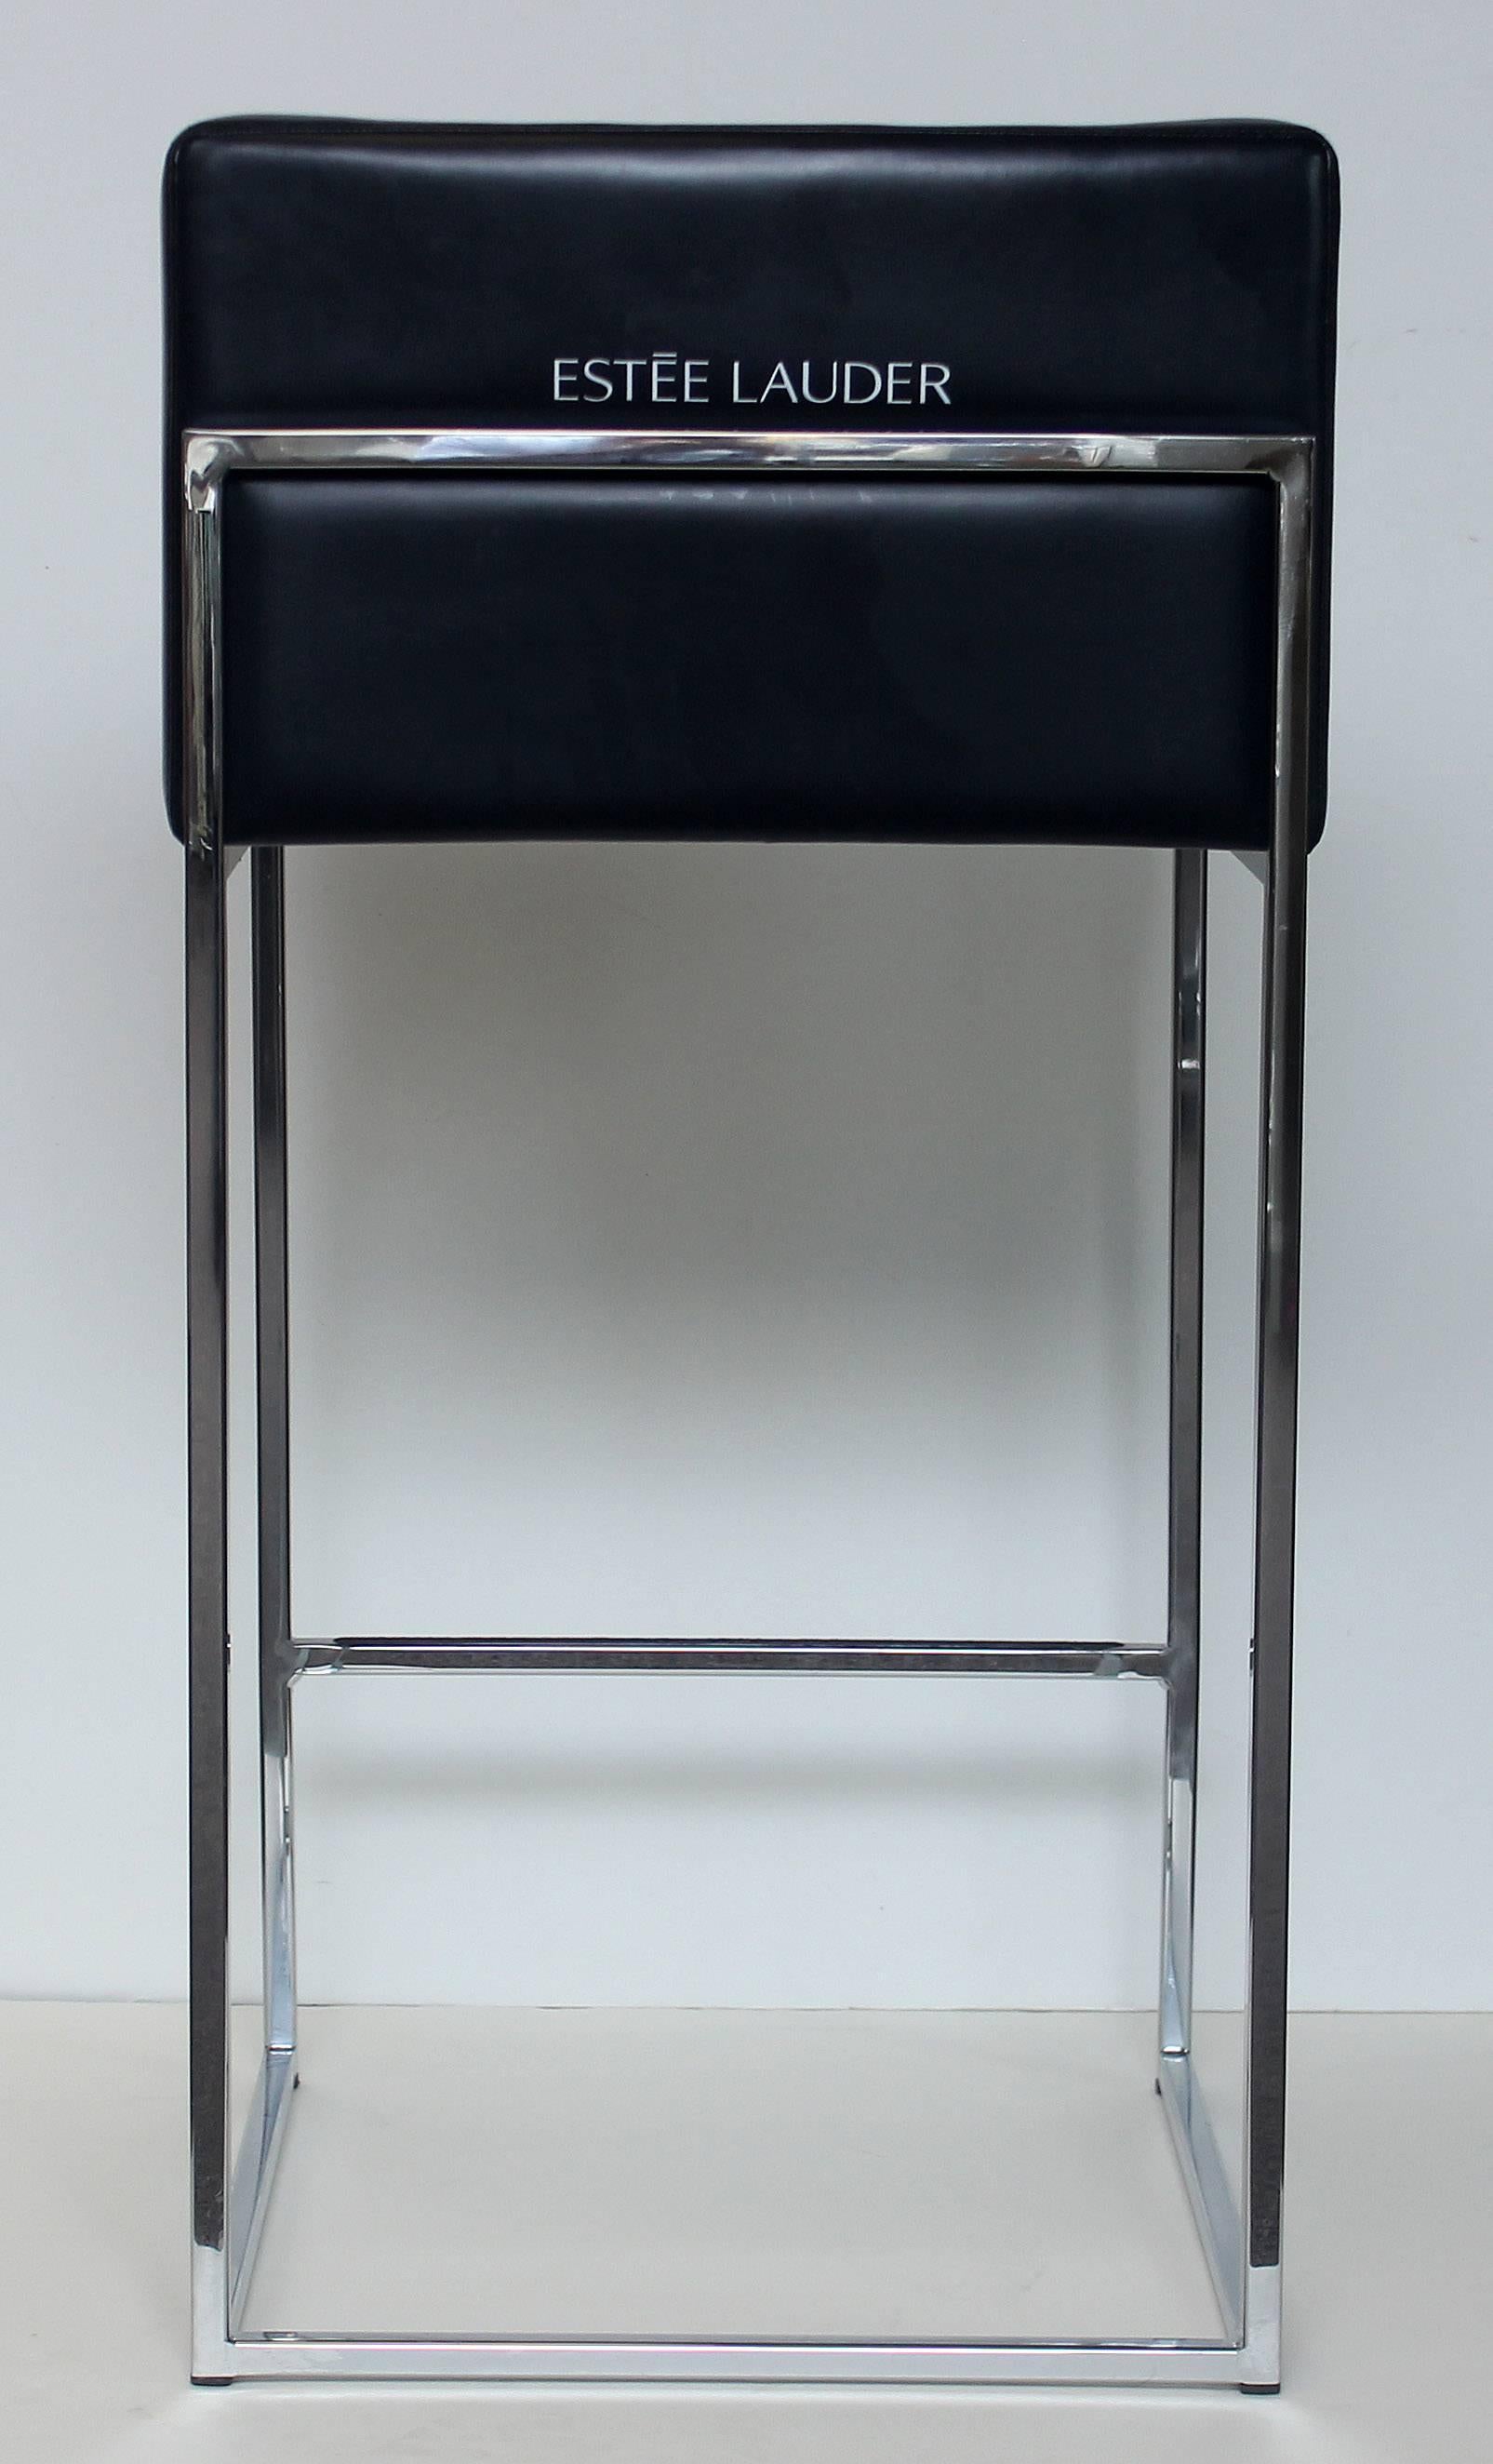 Pair of Milo Baughman stools for Estée Lauder department store makeup counters. Chrome and vinyl.